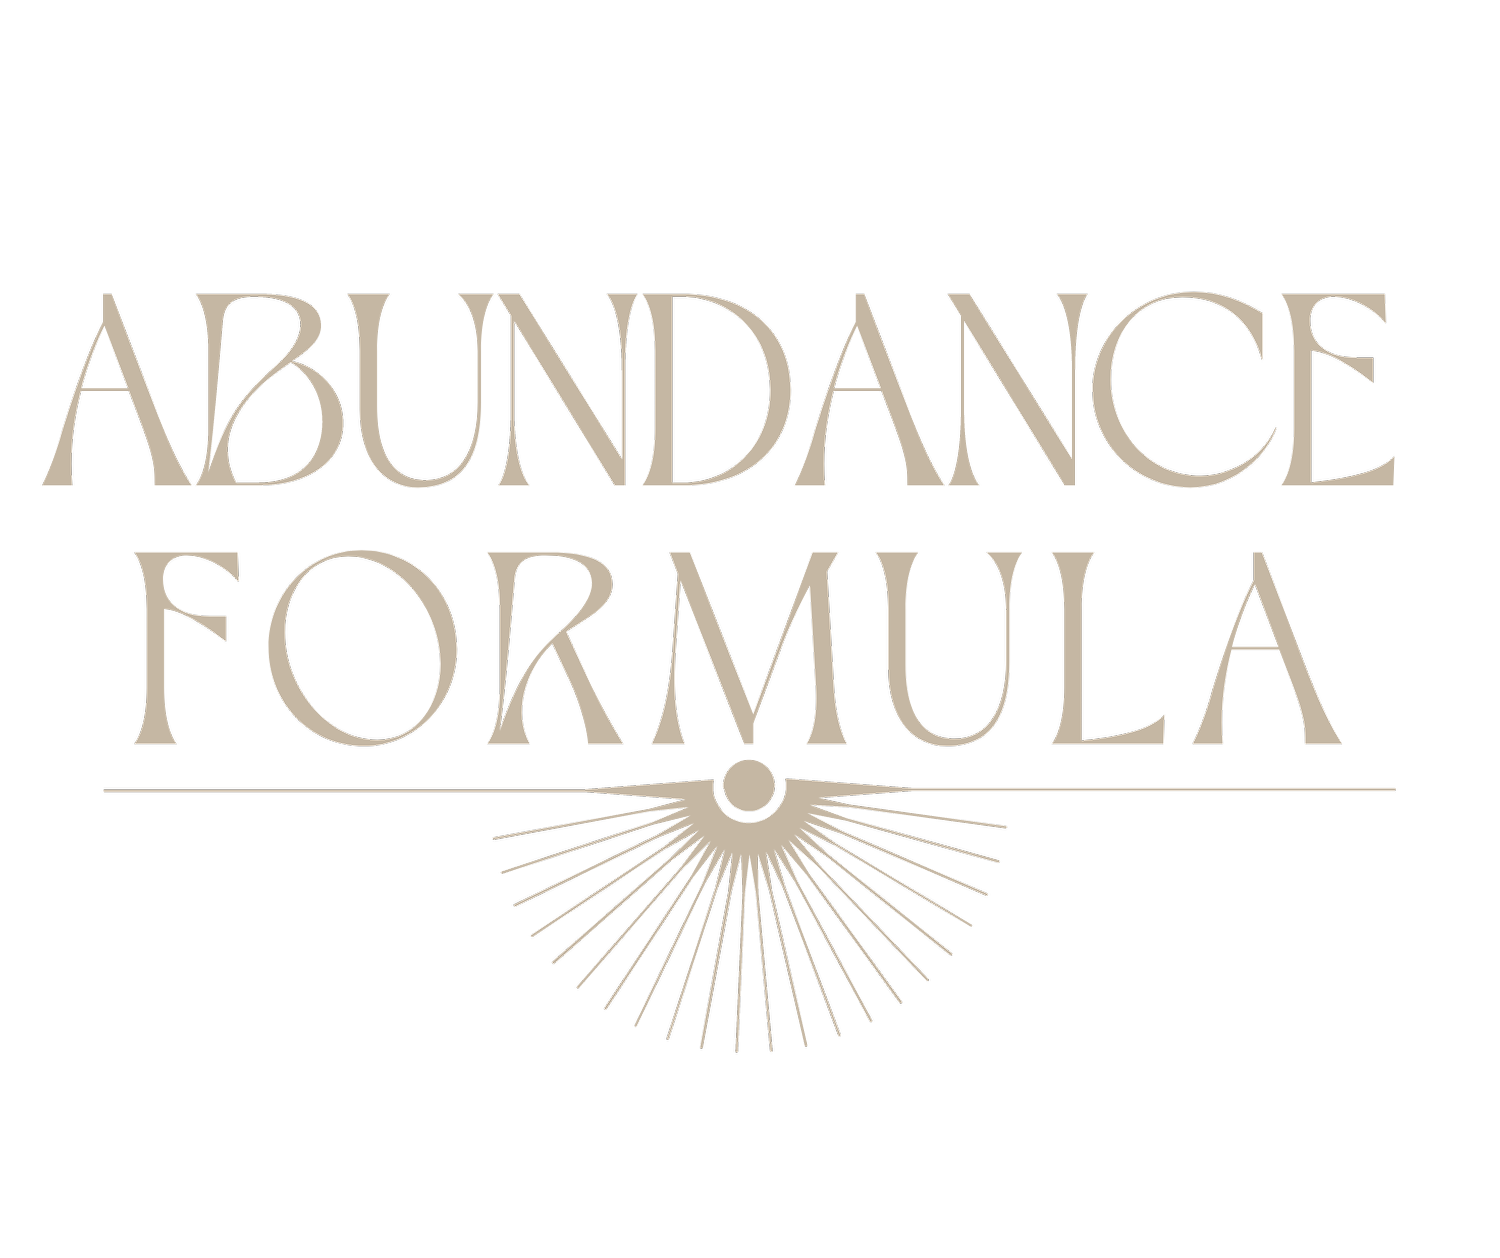 The Abundance Formula